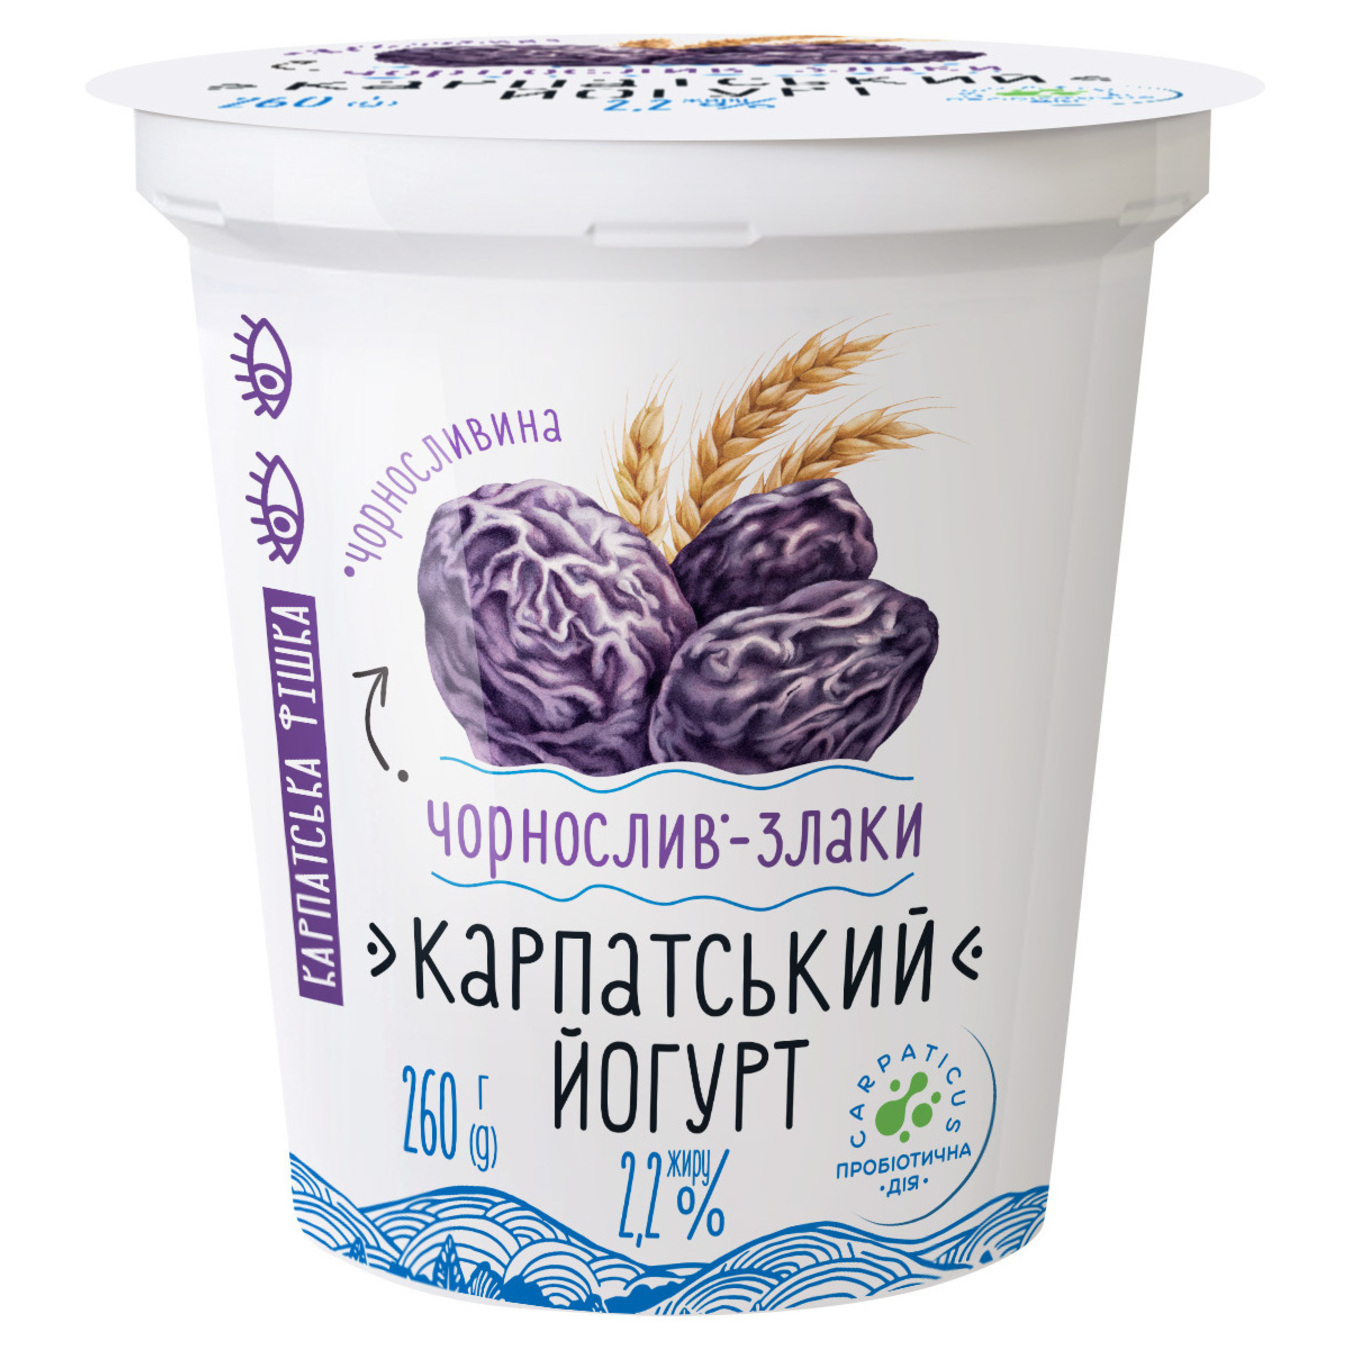 Halychyna Yoghurt Black Plum-Grain 2.2% 260 g